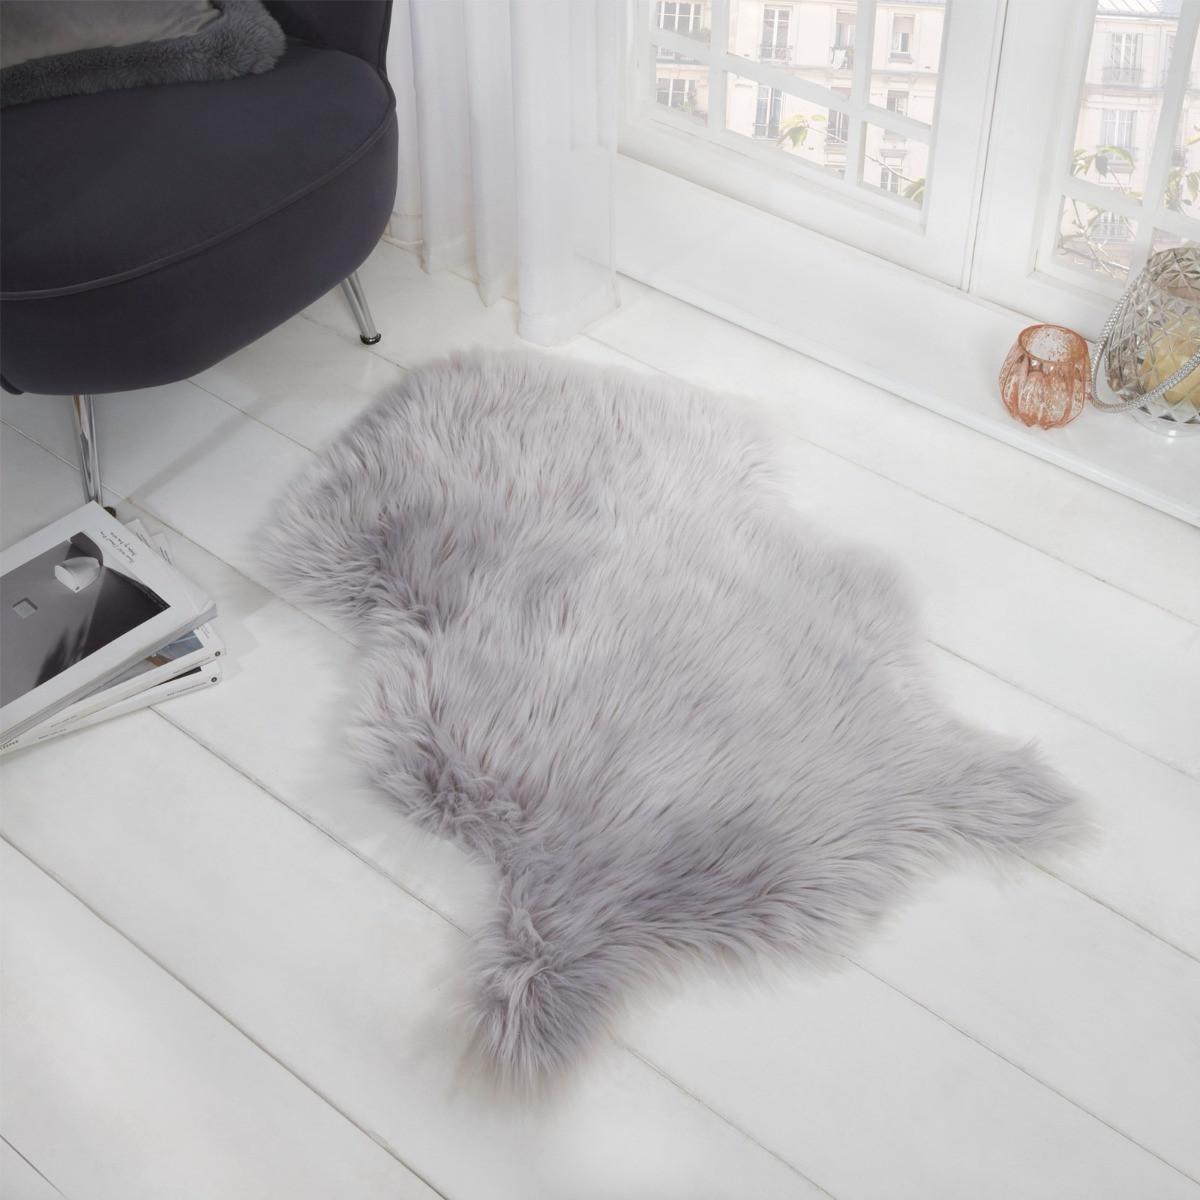 Sienna Faux Fur Sheepskin Rug, Silver Grey - 60 x 90cm>